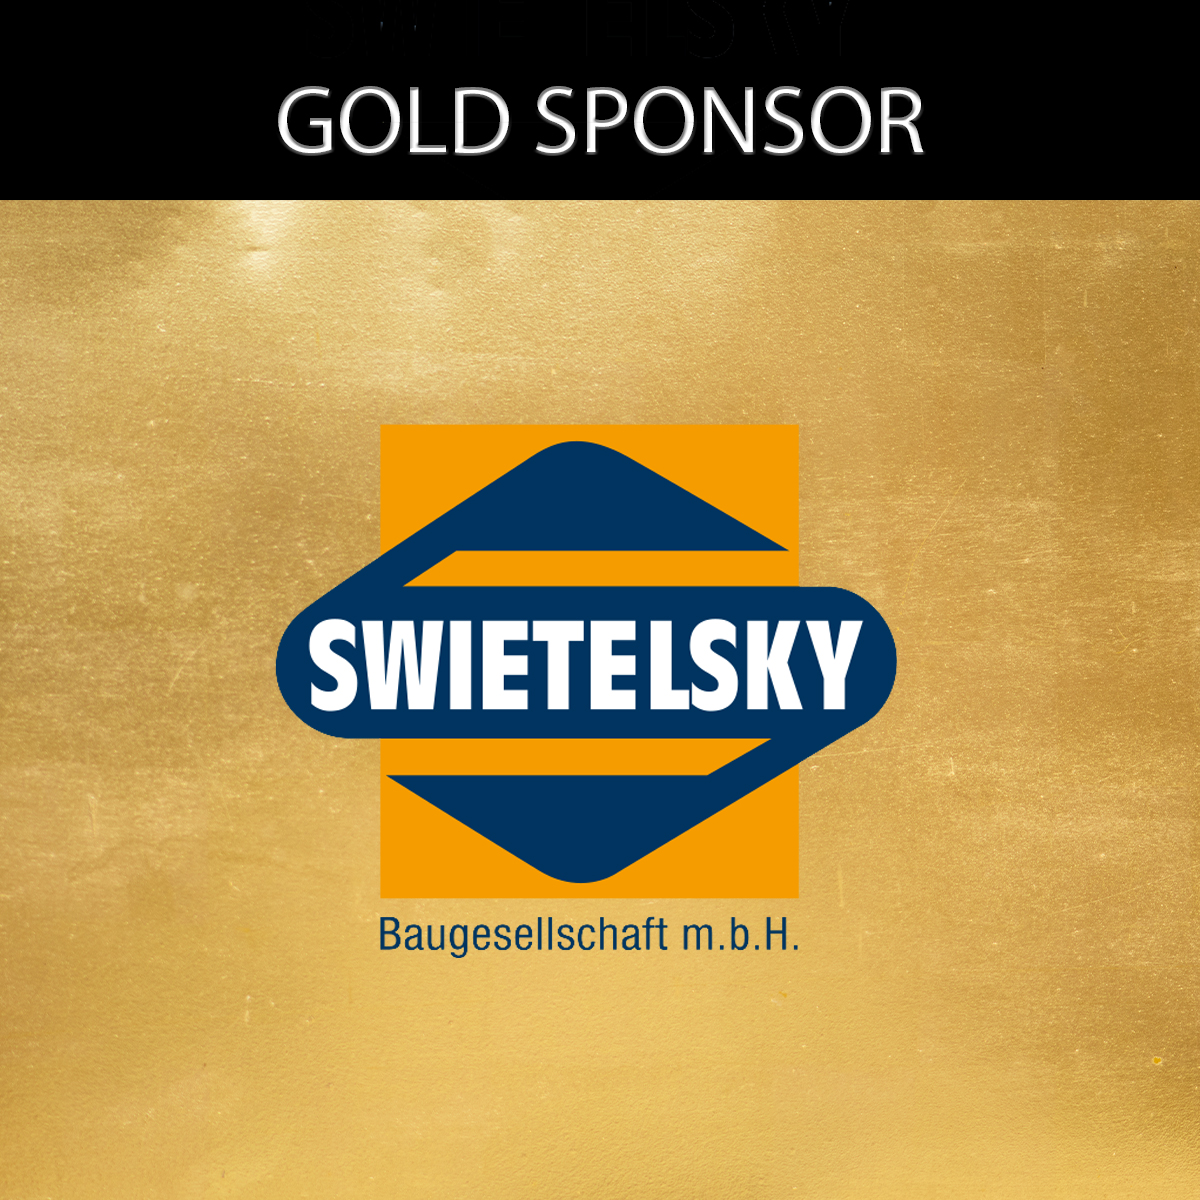 Swietelsky-Gold